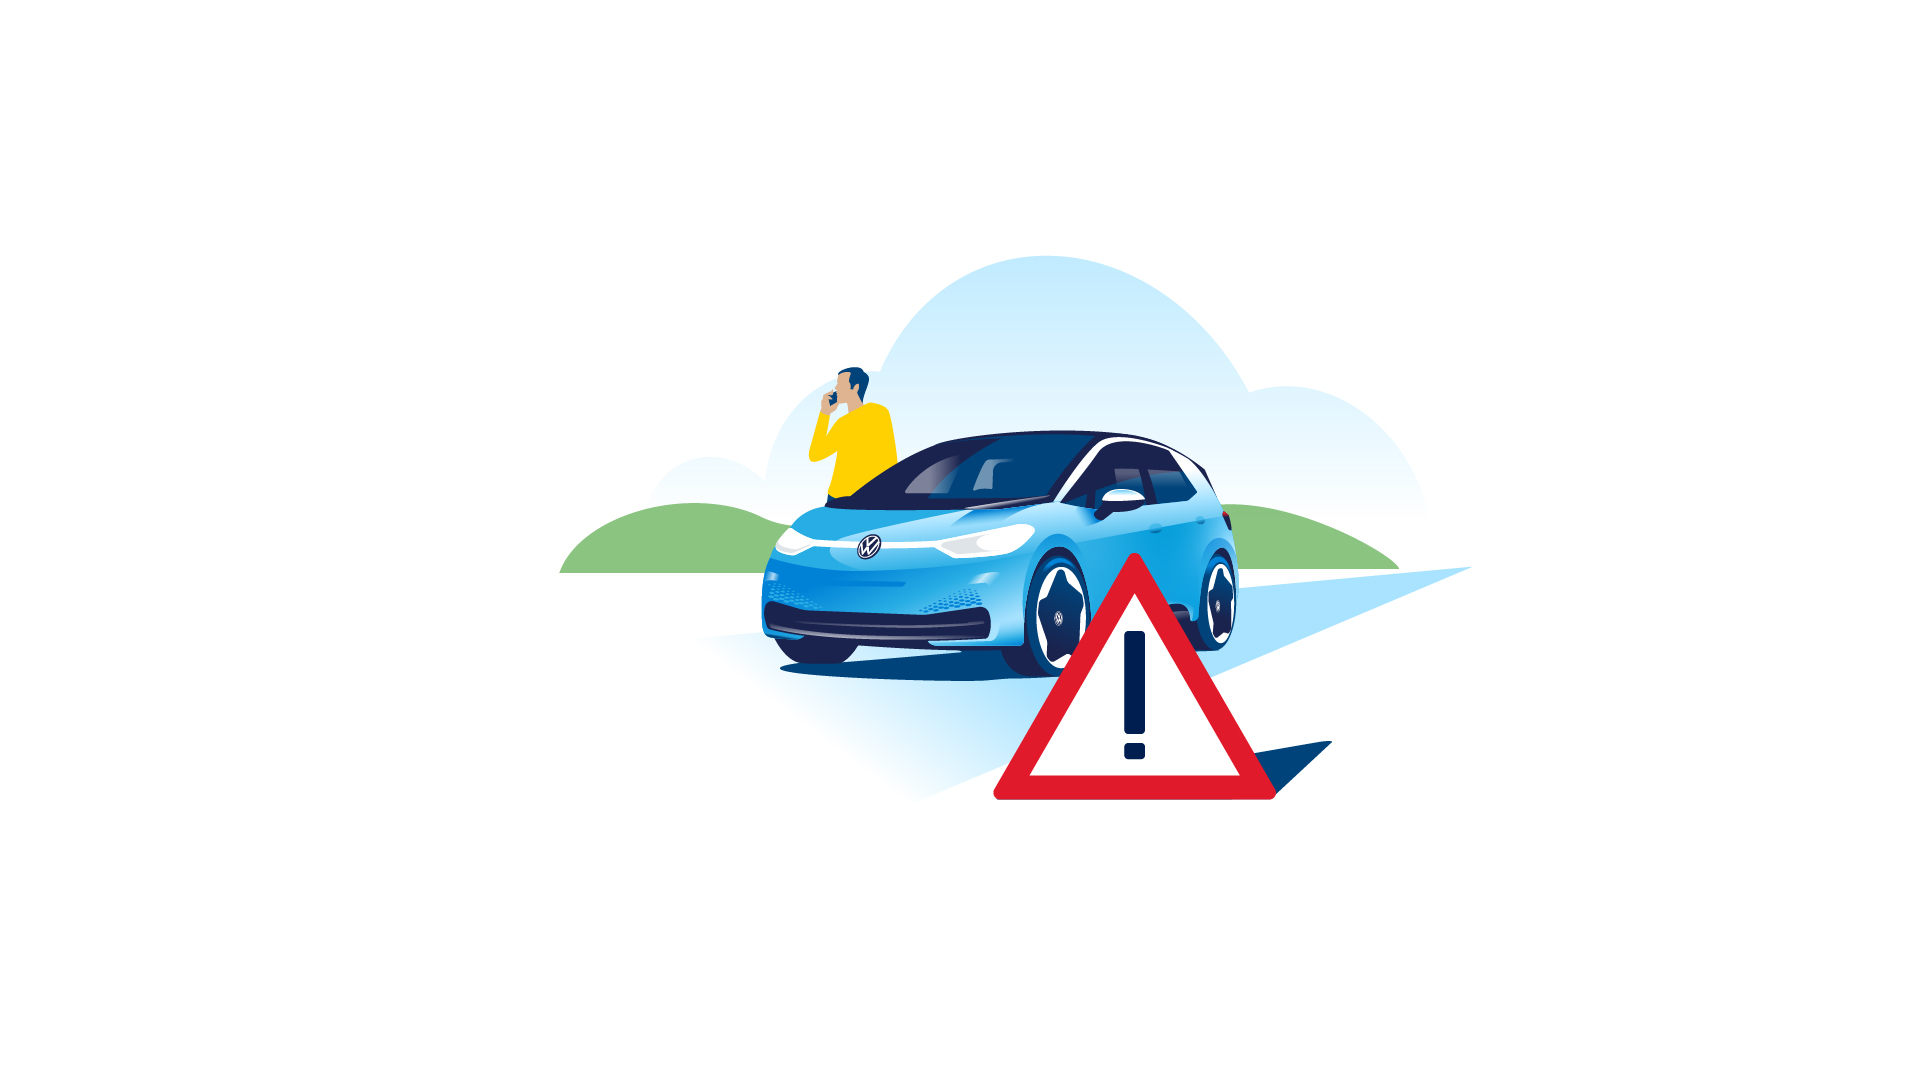 Um triângulo de aviso está em frente ao carro elétrico Volkswagen ID.3 